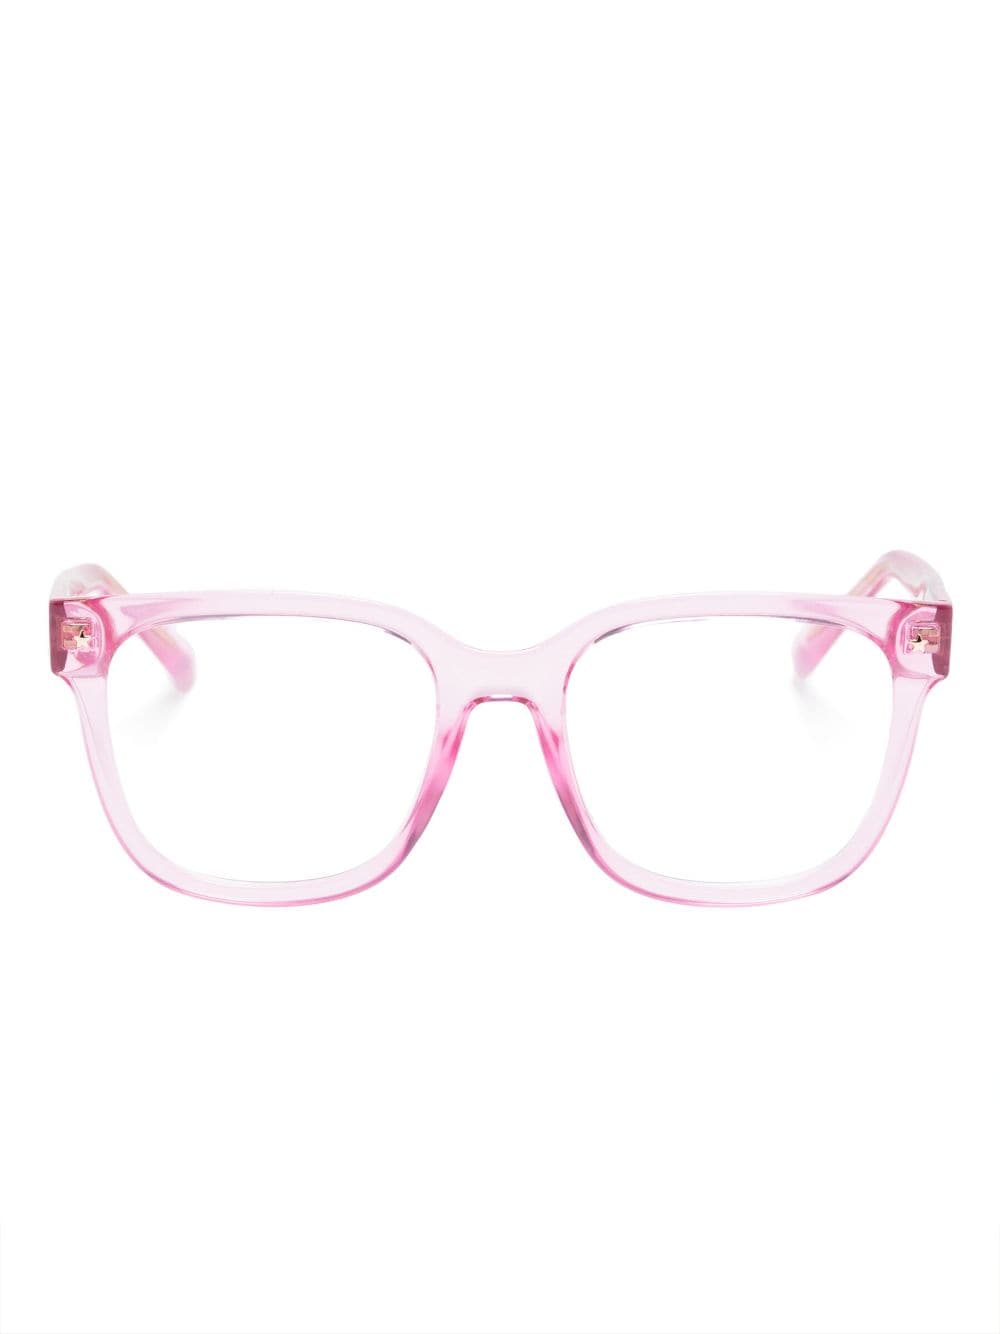 Chiara Ferragni transparent square-frame glasses - Pink von Chiara Ferragni